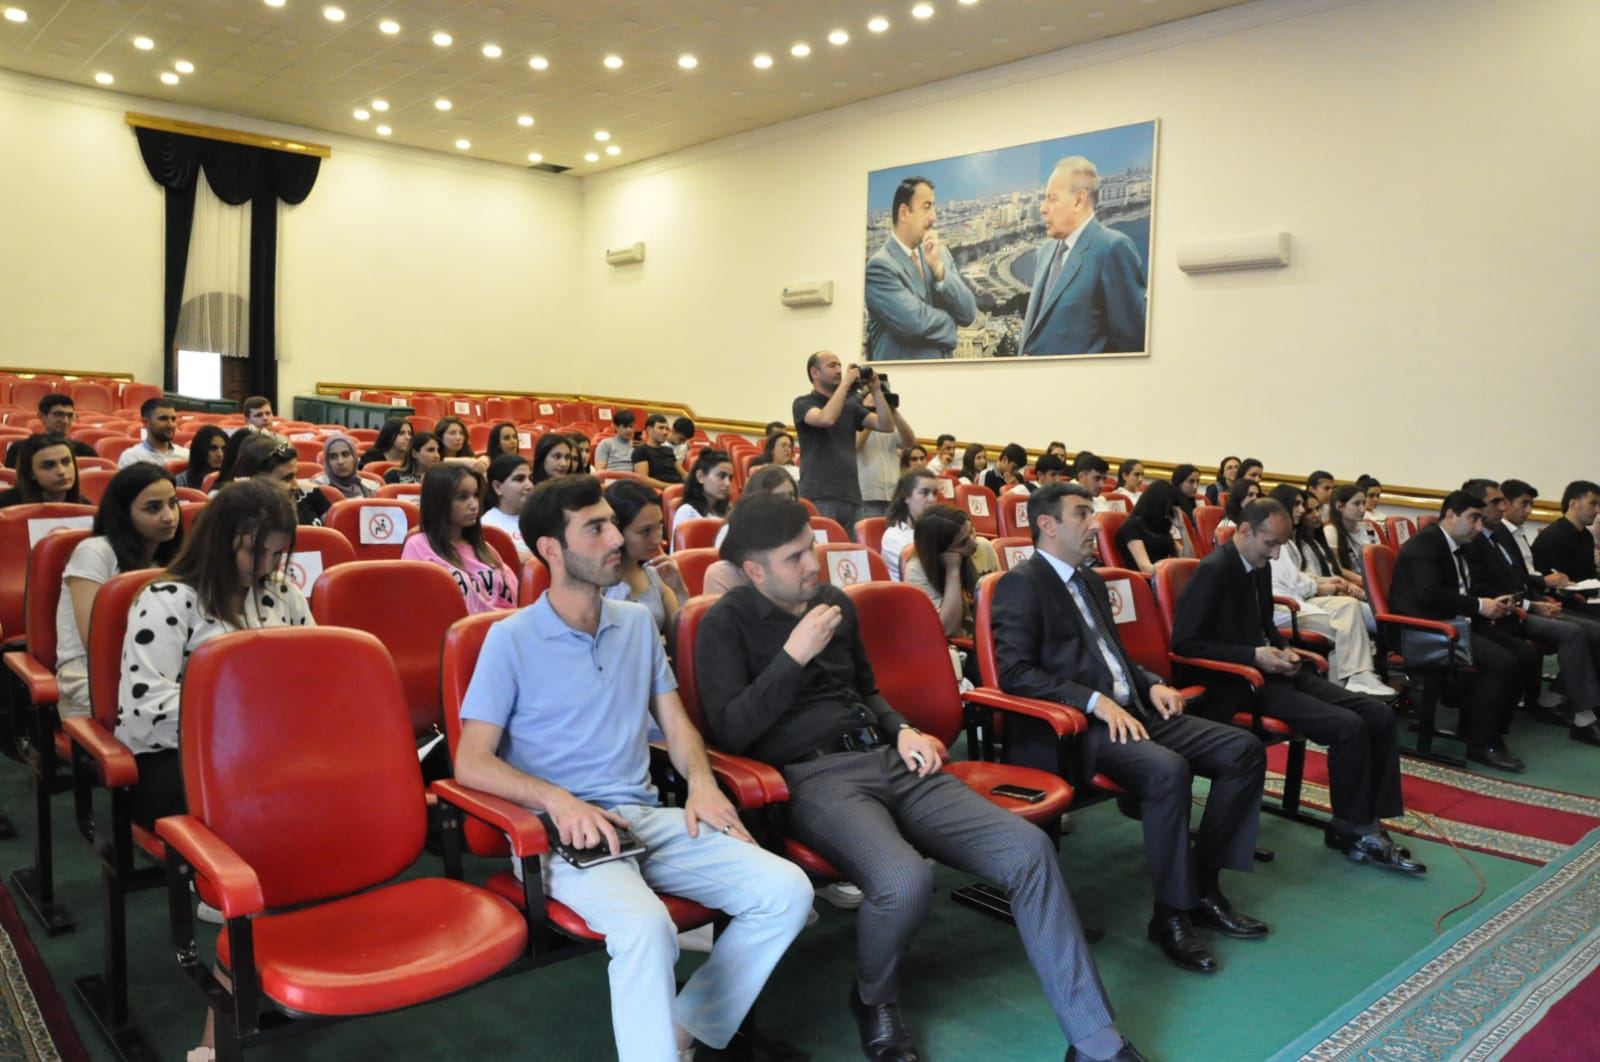 MDU komandaları “Mingəçevir Gənclər Debat Forumu”nun finalçıları olublar (FOTO)